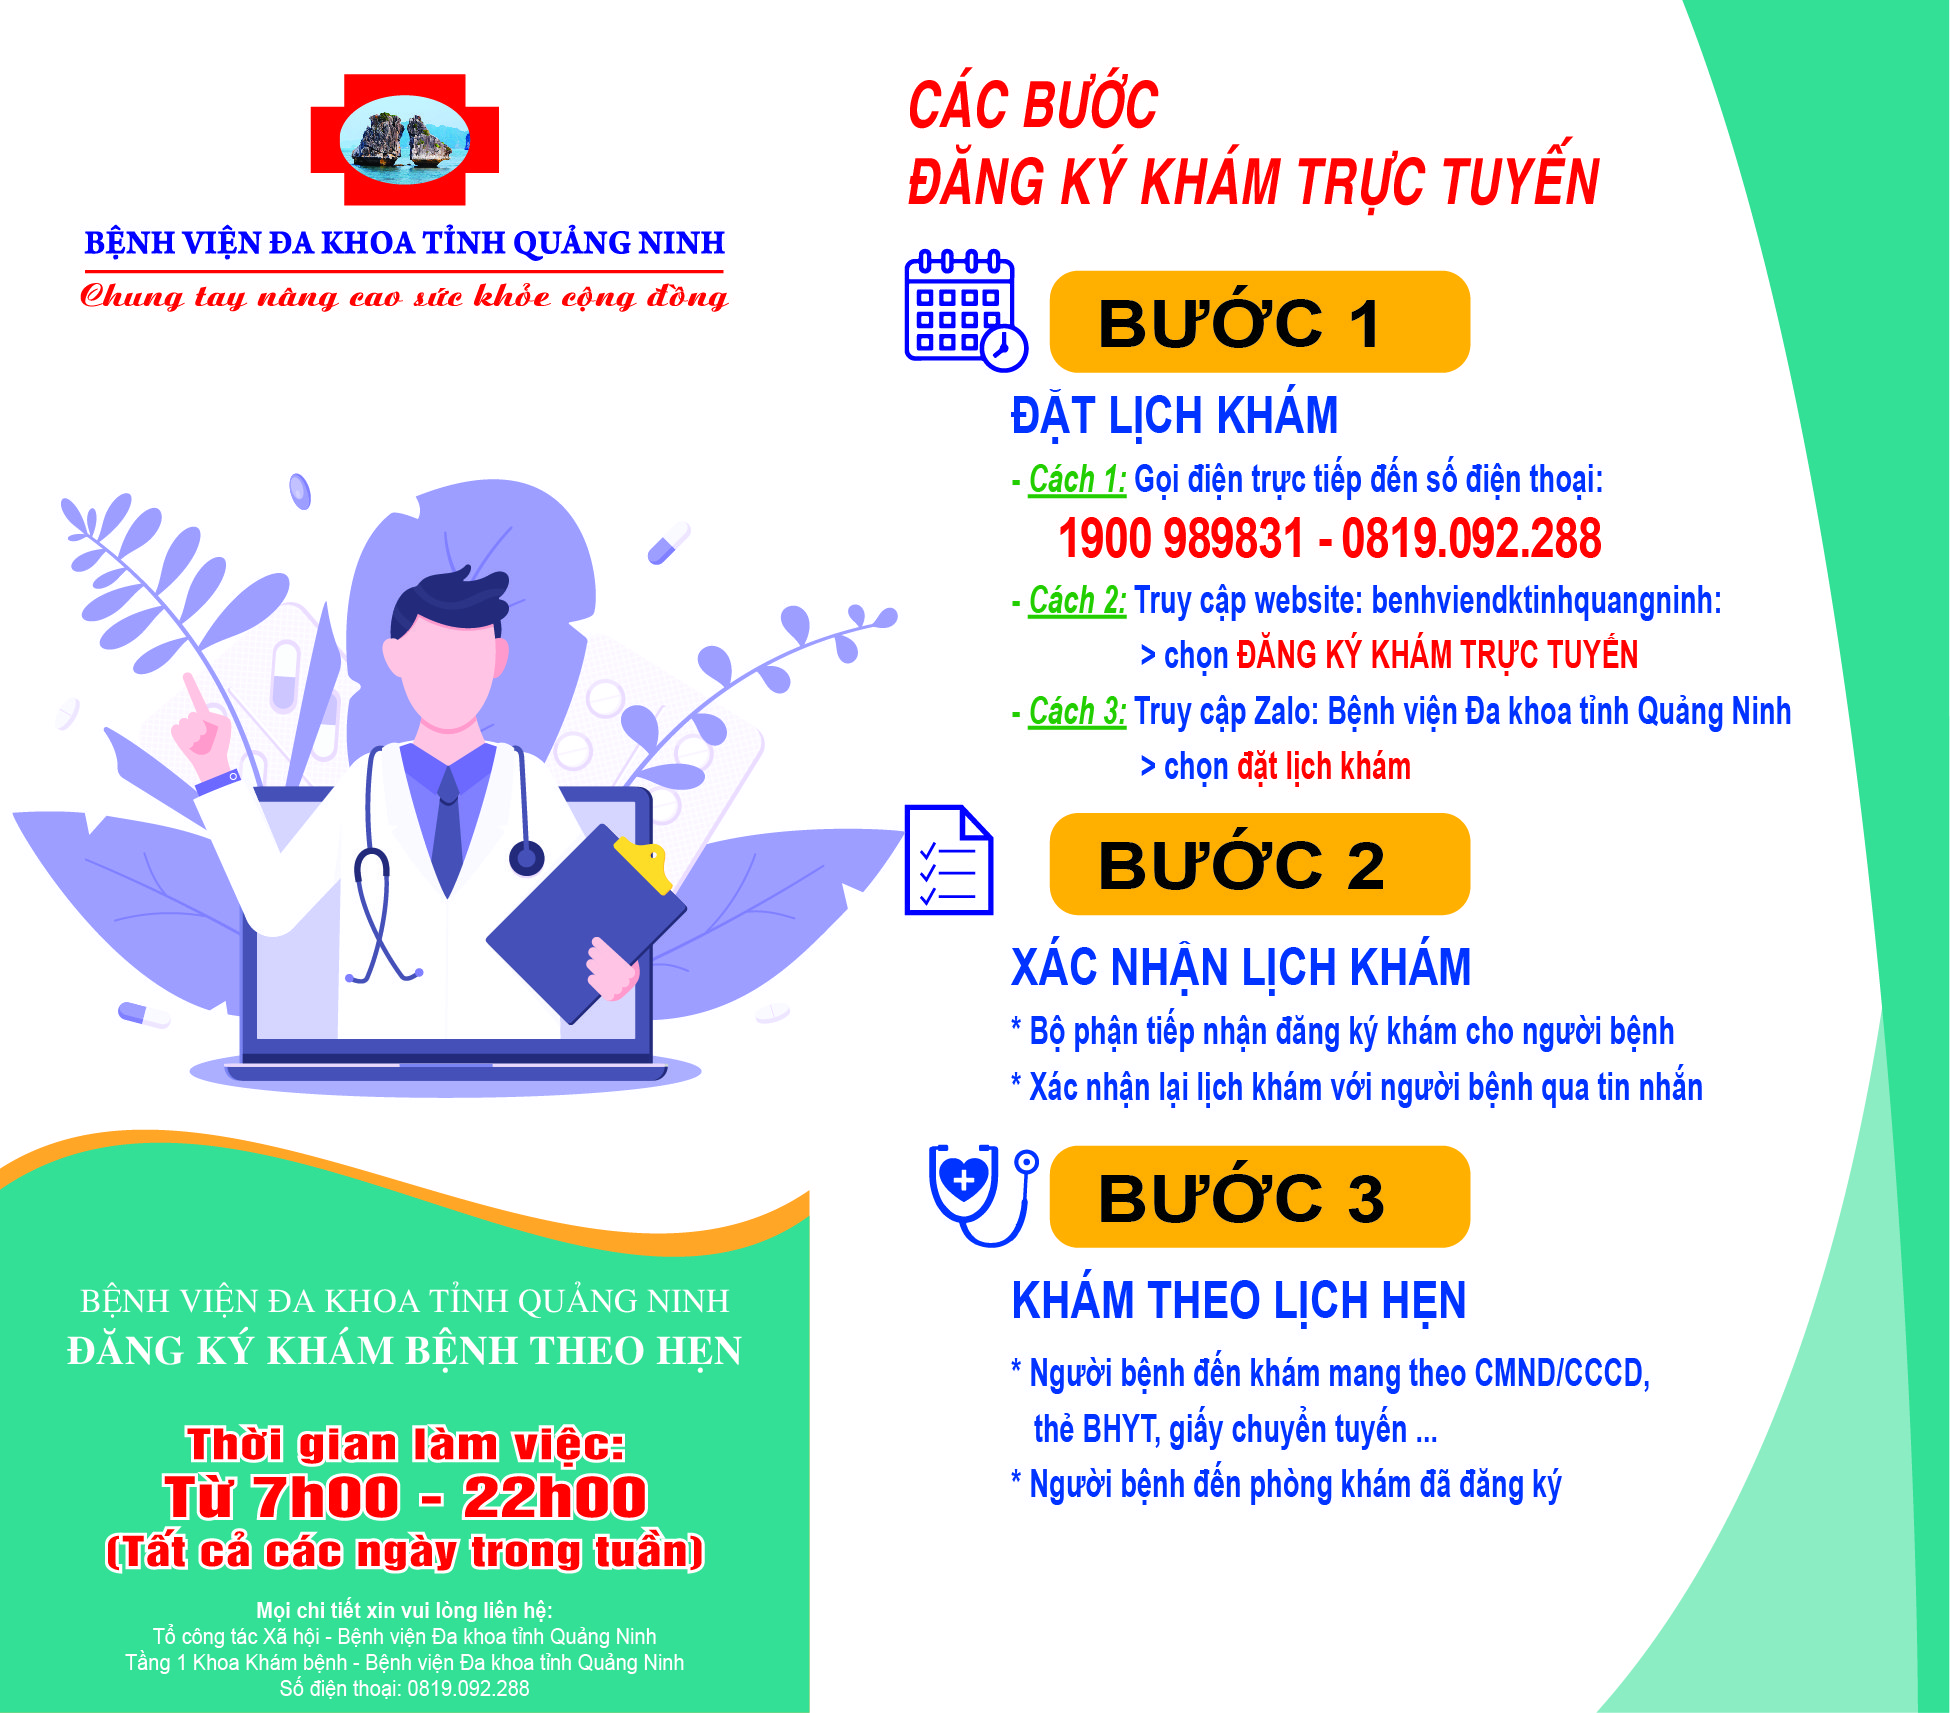 Hướng dẫn đăng ký khám trực tuyến tại Bệnh viện Đa khoa tỉnh Quảng Ninh